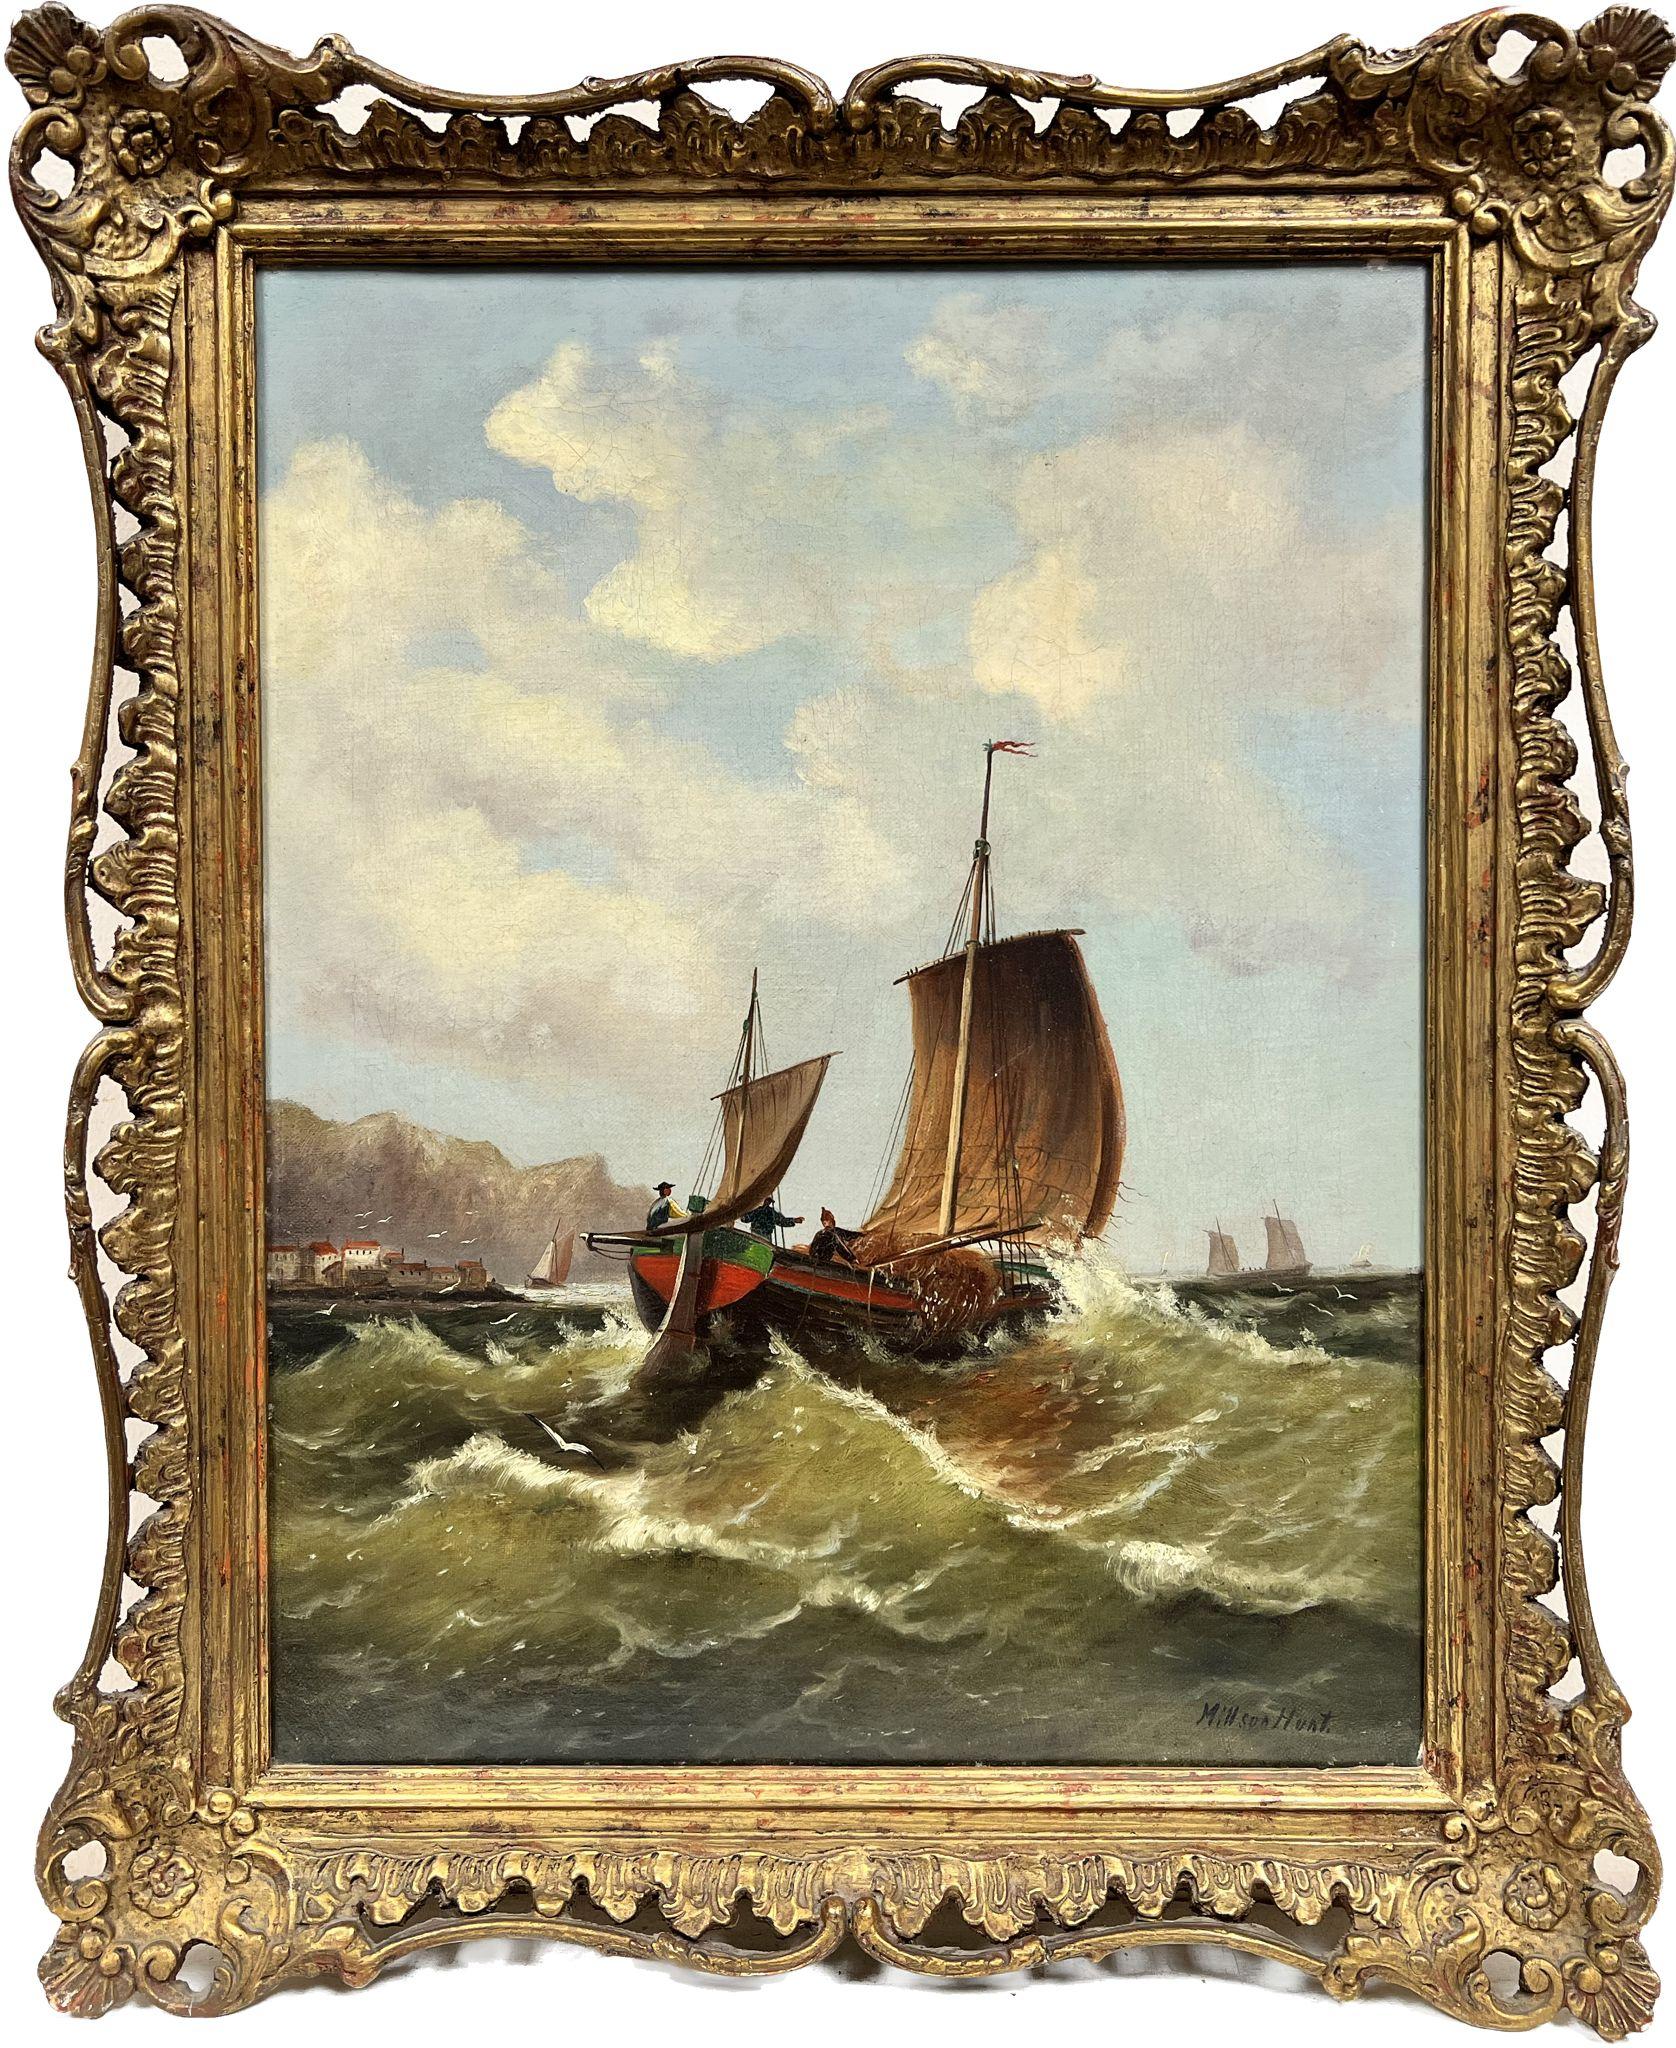 Figurative Painting Victorian School - Fine peinture à l'huile britannique du 19ème siècle Bateaux de pêche Mers agitées quittant le port